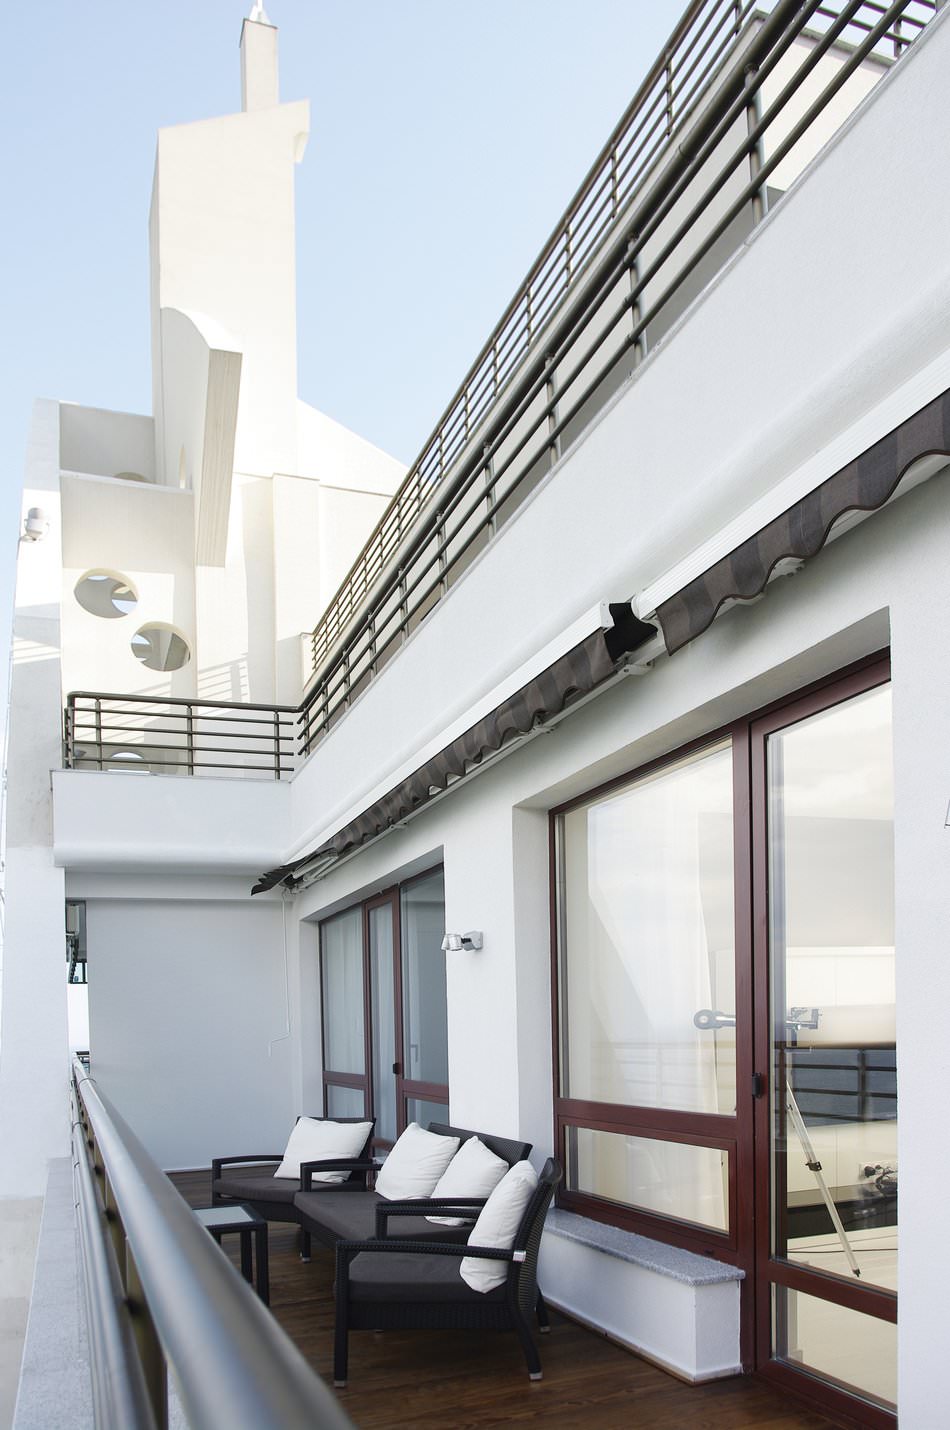 A lakás modern belsőépítészete a minimalizmus stílusában